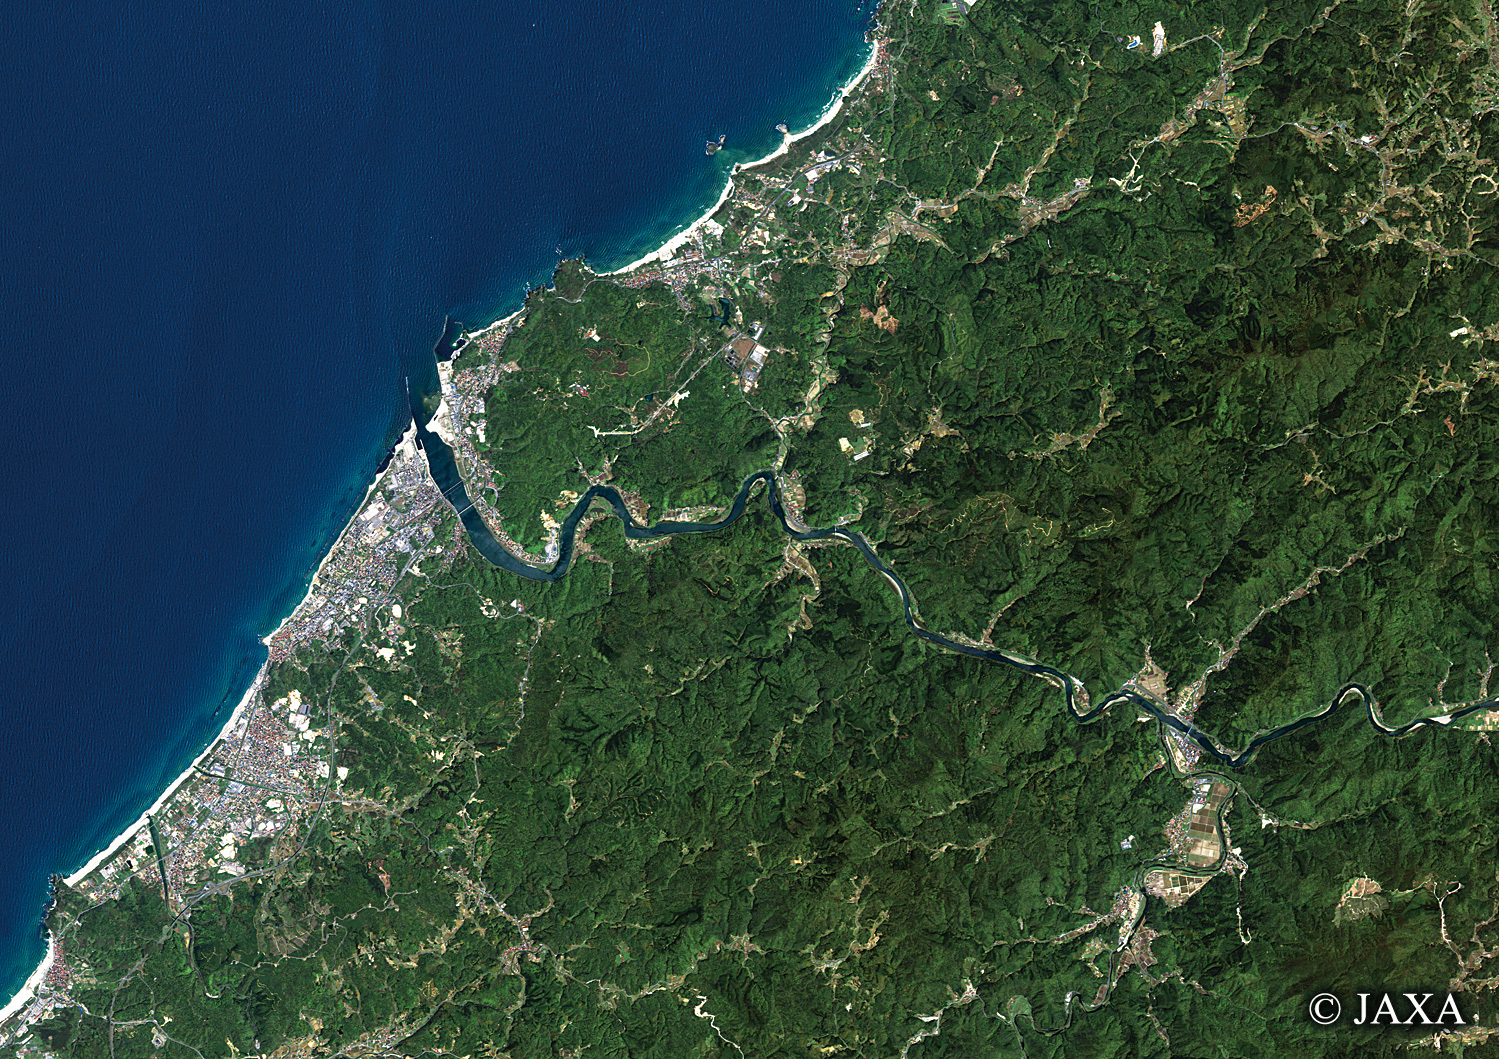 だいちから見た日本の都市 江津市:衛星画像